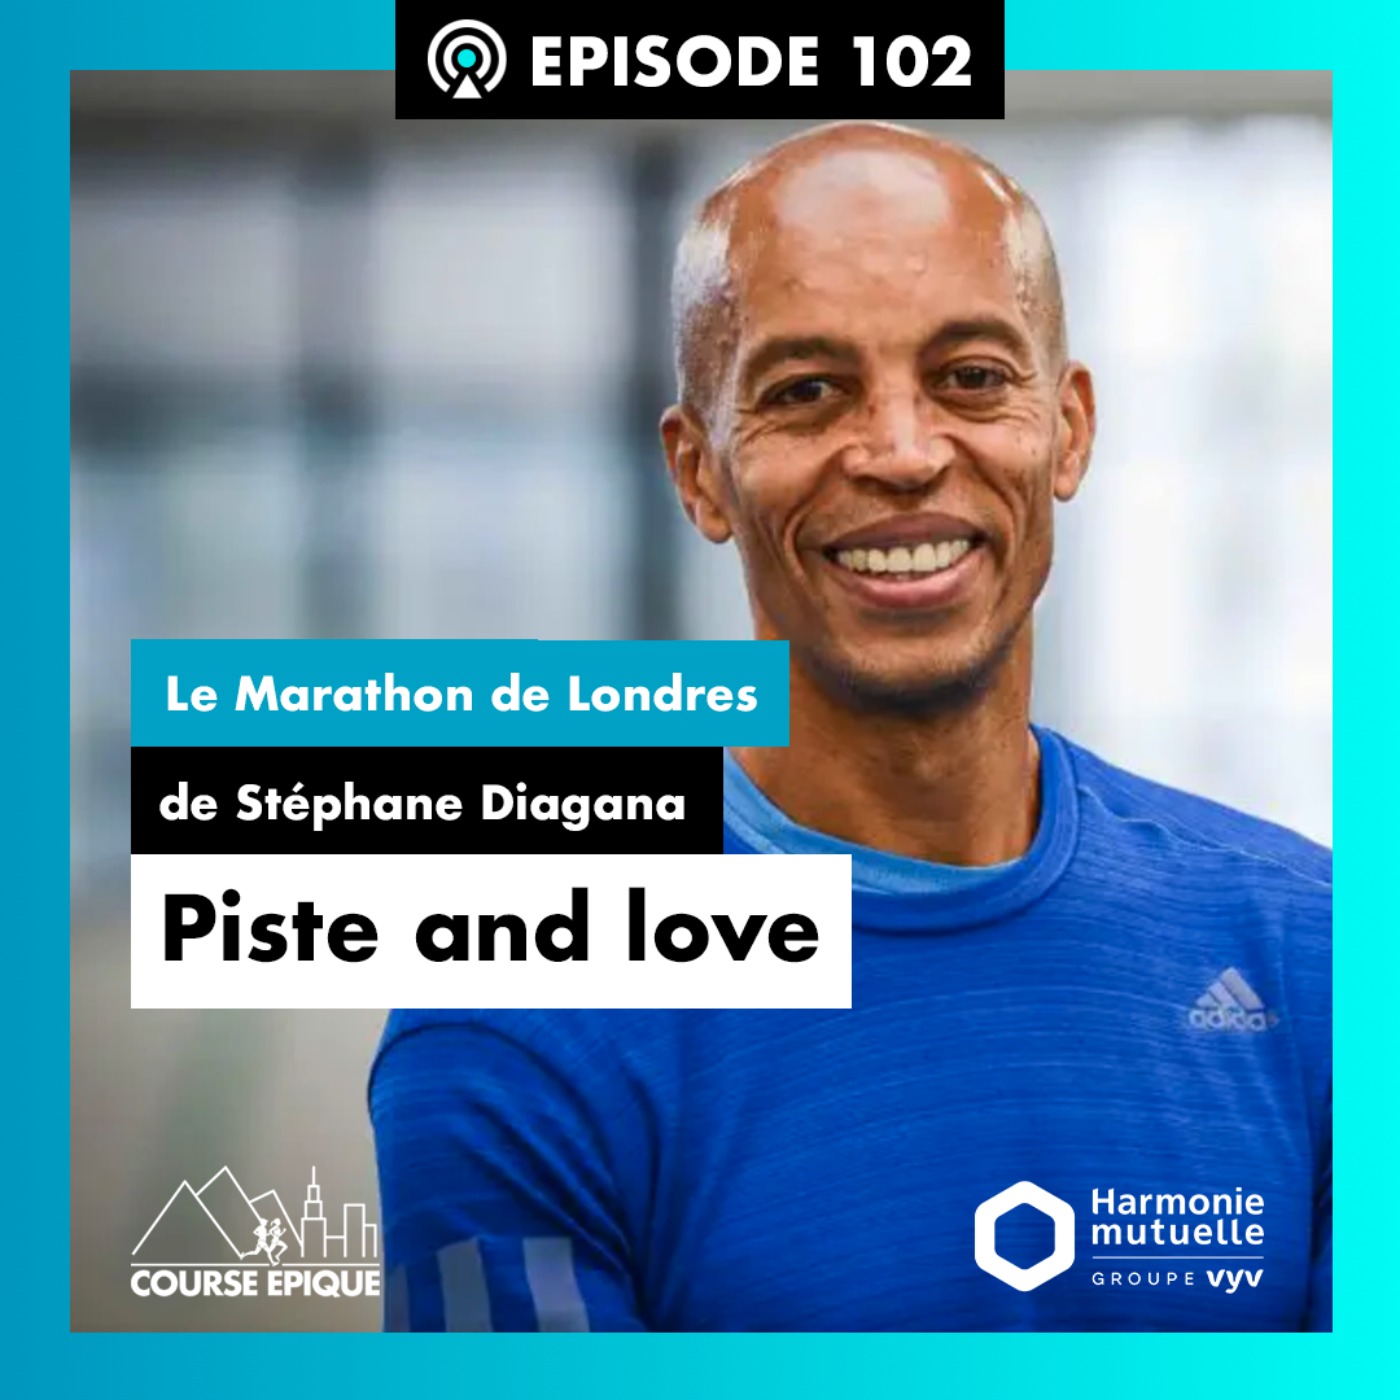 #102 "Piste and love", le Marathon de Londres de Stéphane Diagana